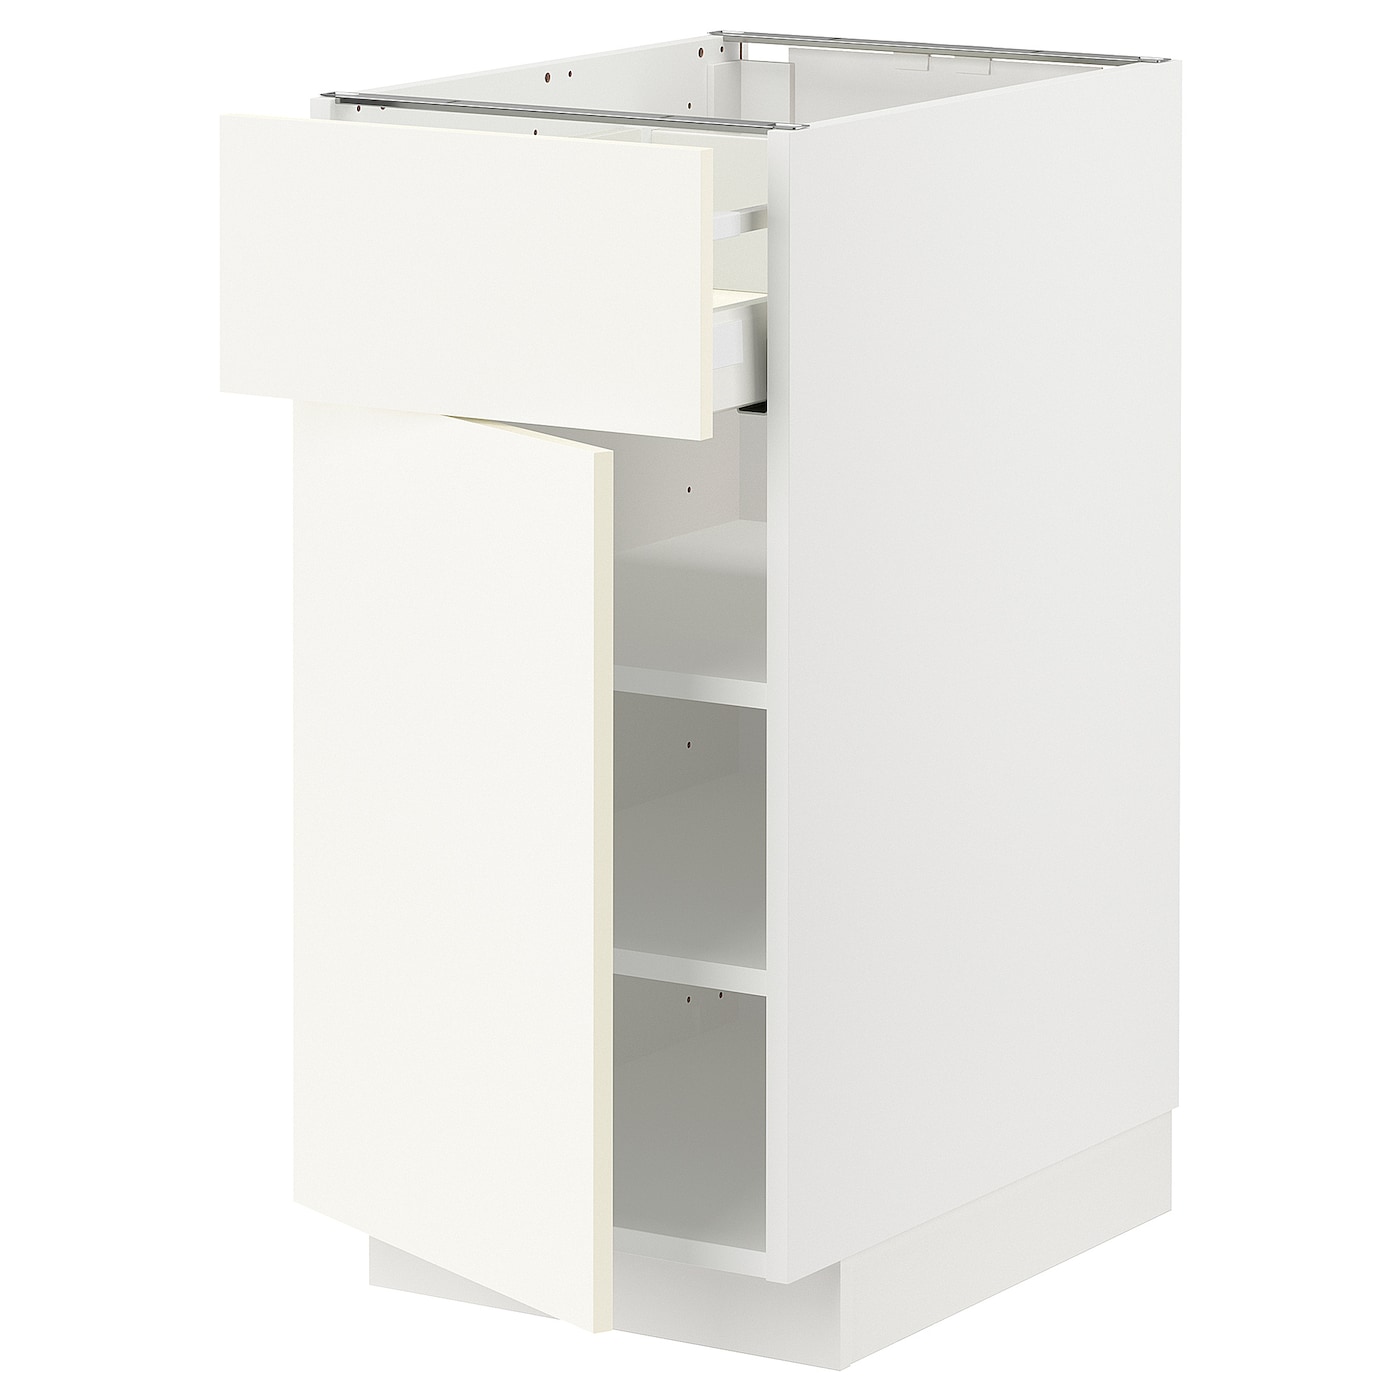 Напольный шкаф - METOD / MAXIMERA IKEA/ МЕТОД/ МАКСИМЕРА ИКЕА,  88х40 см, белый